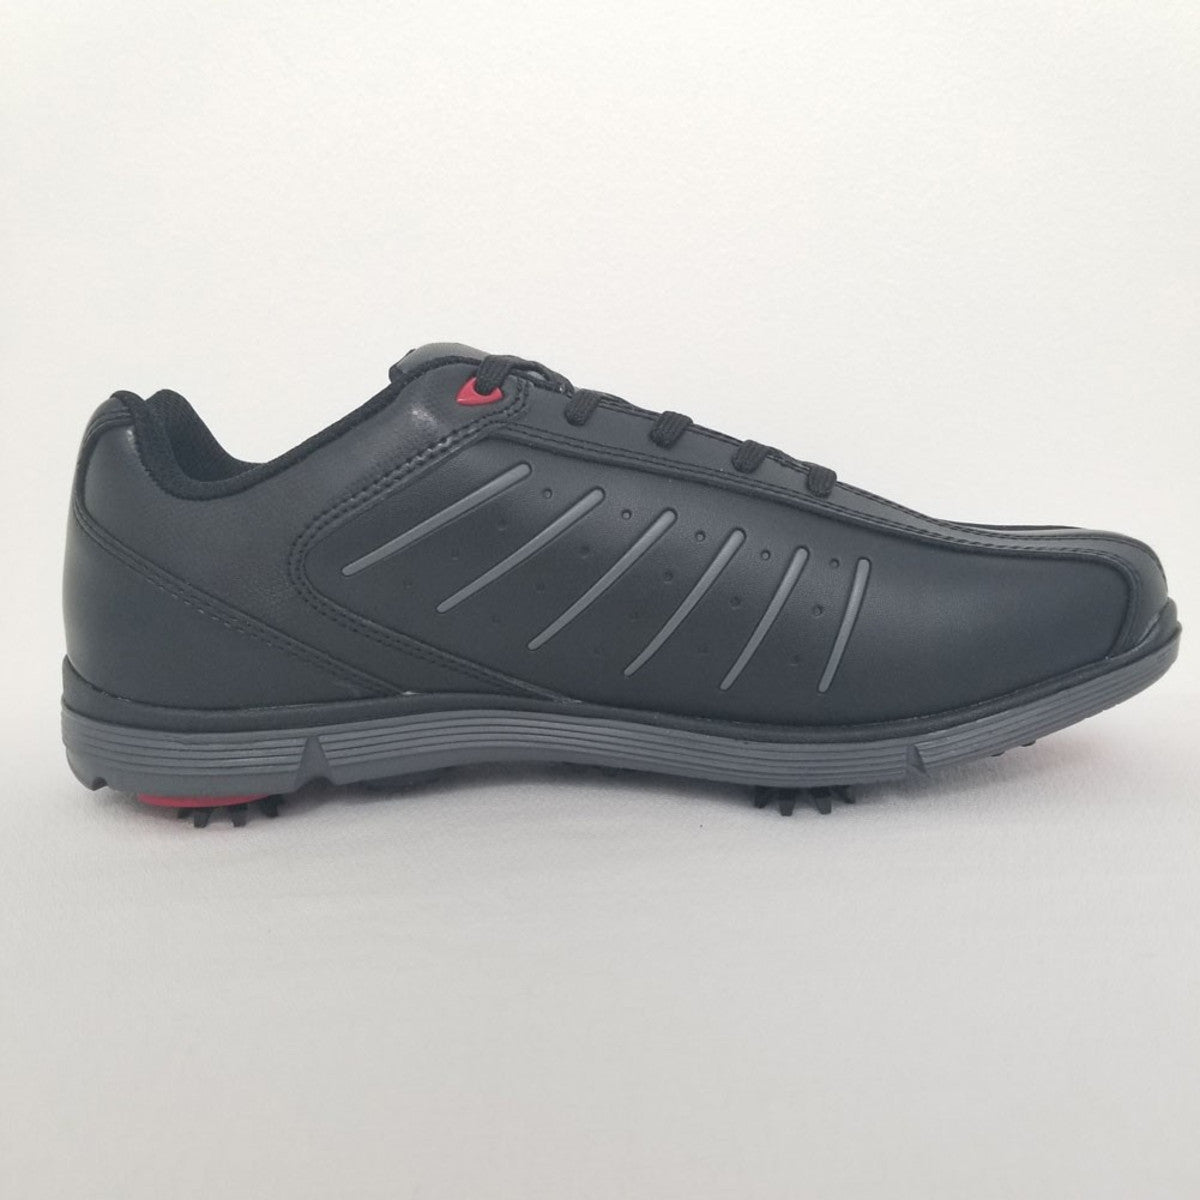 Etonic Etonic St Spikeless Golf Shoes - Black